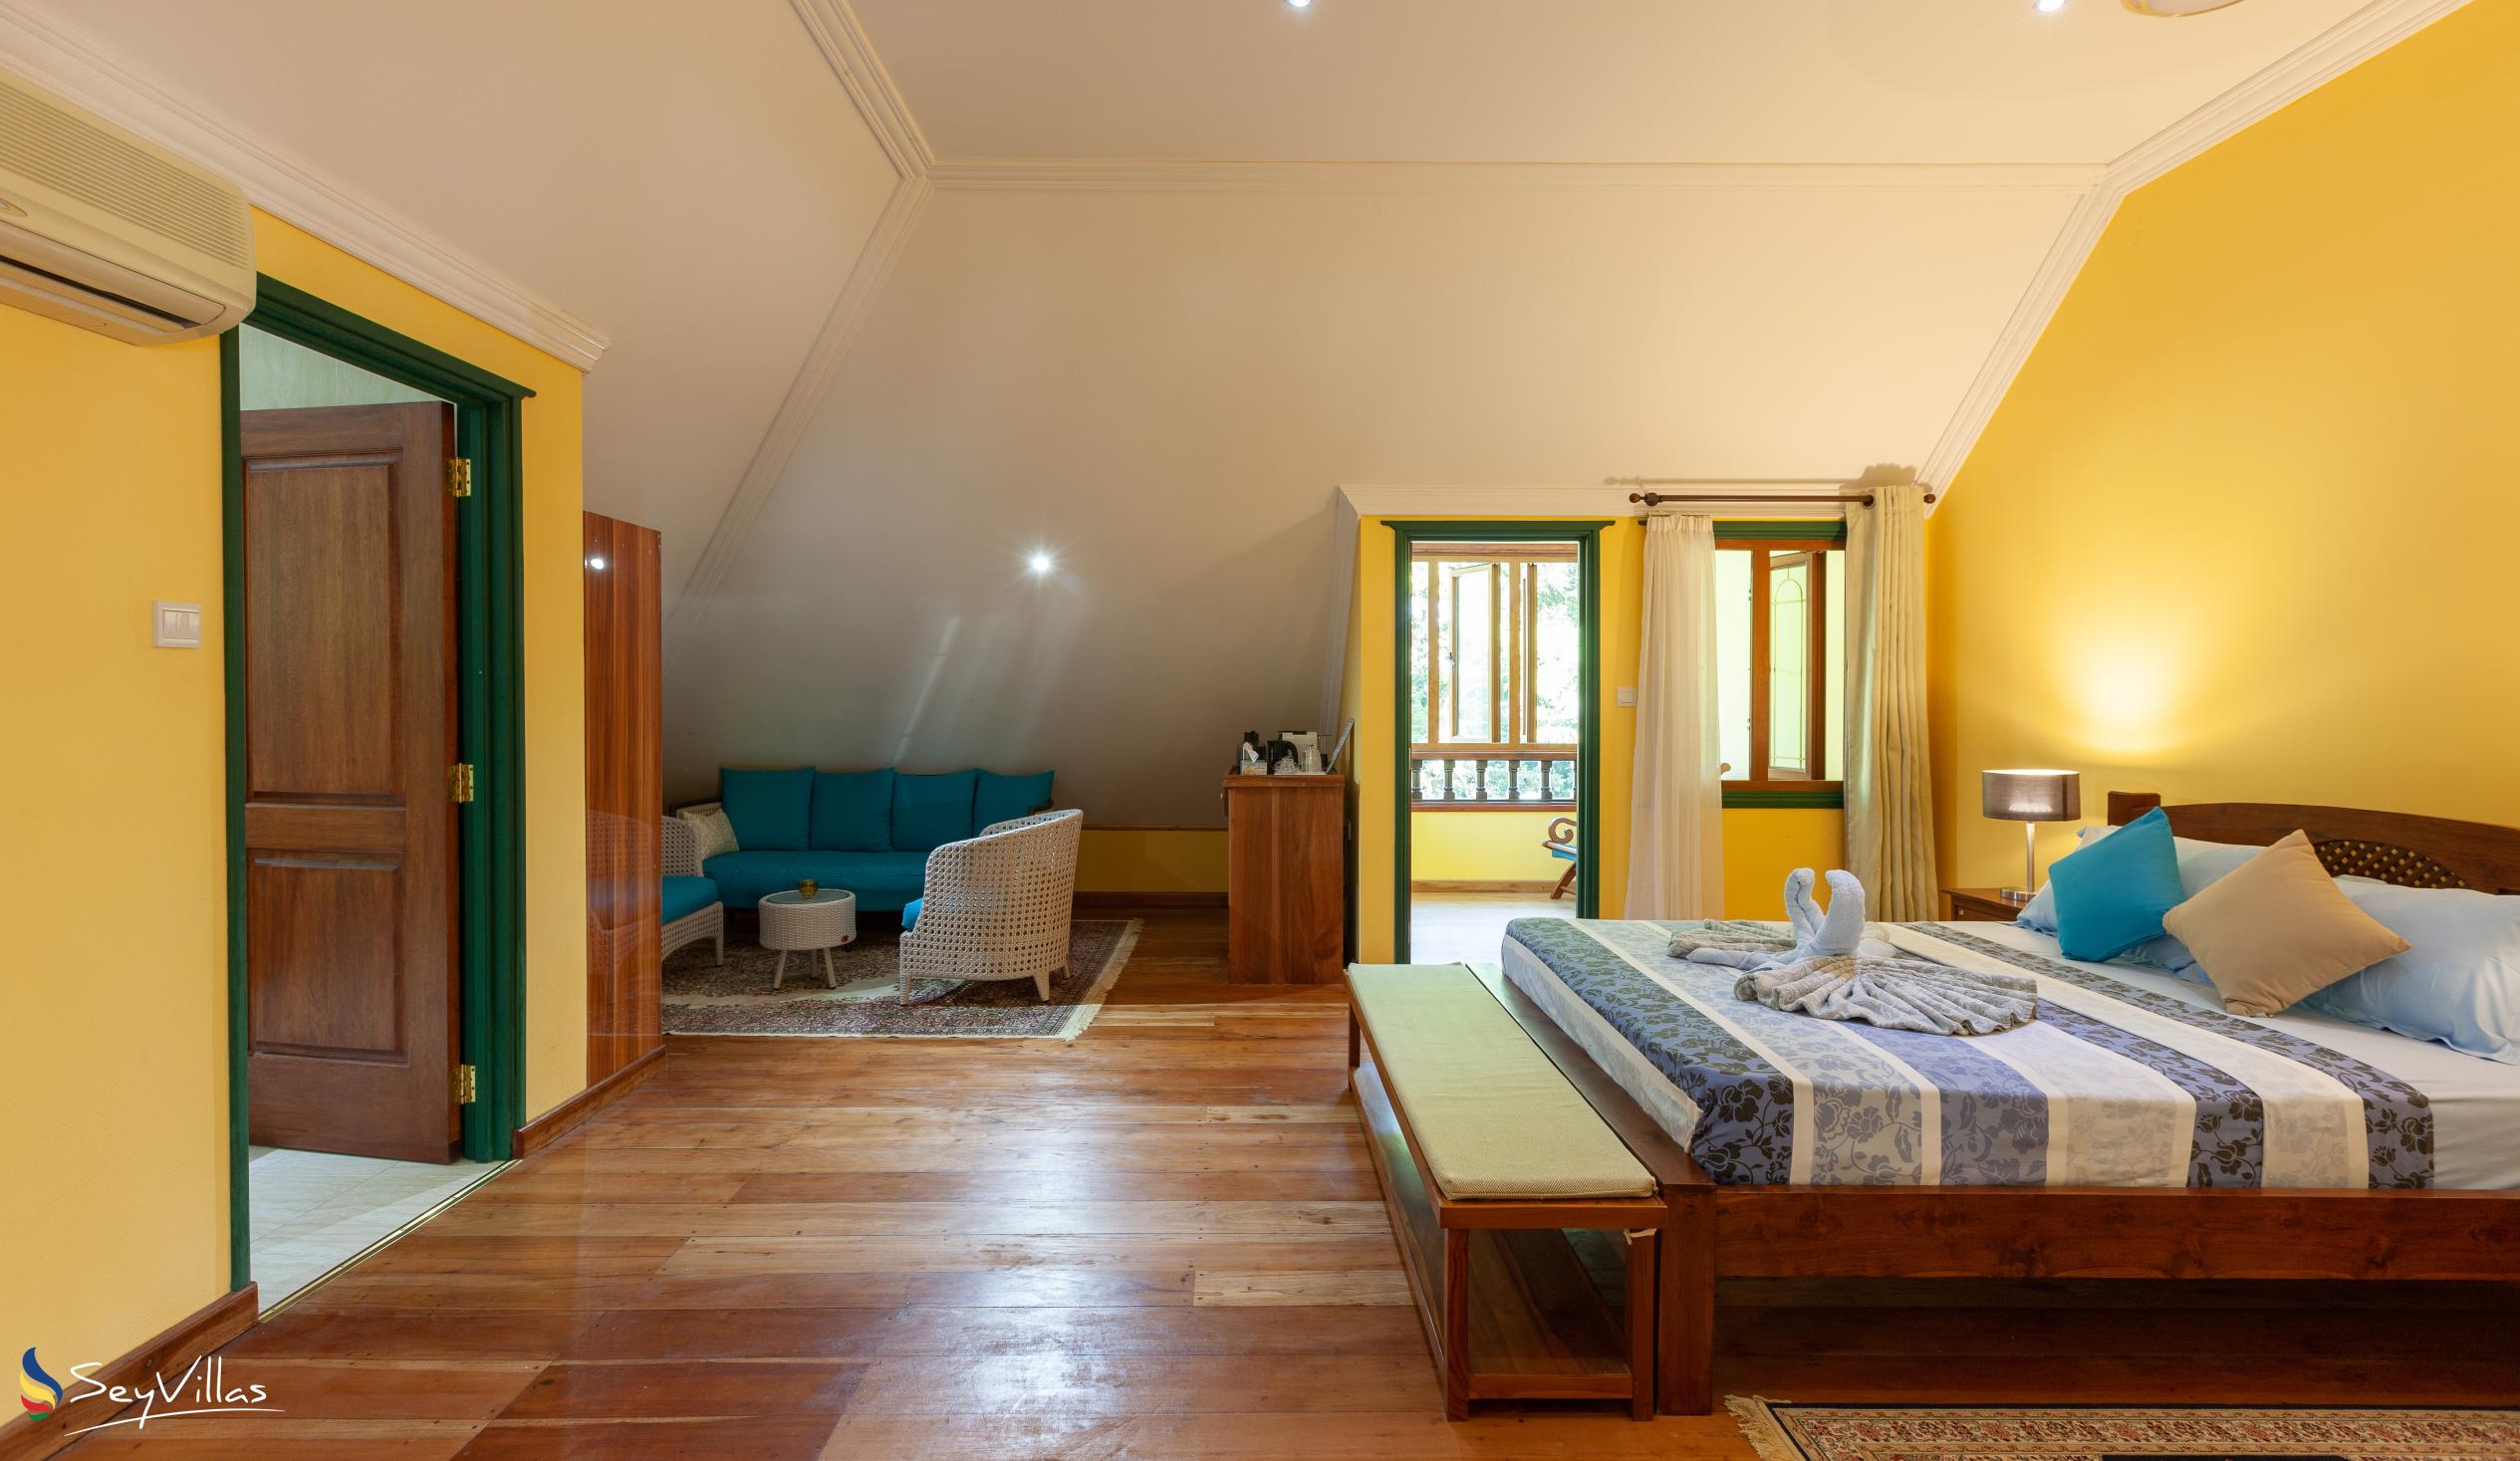 Photo 64: Pension Michel - Villa Roche Bois - Family Room - La Digue (Seychelles)